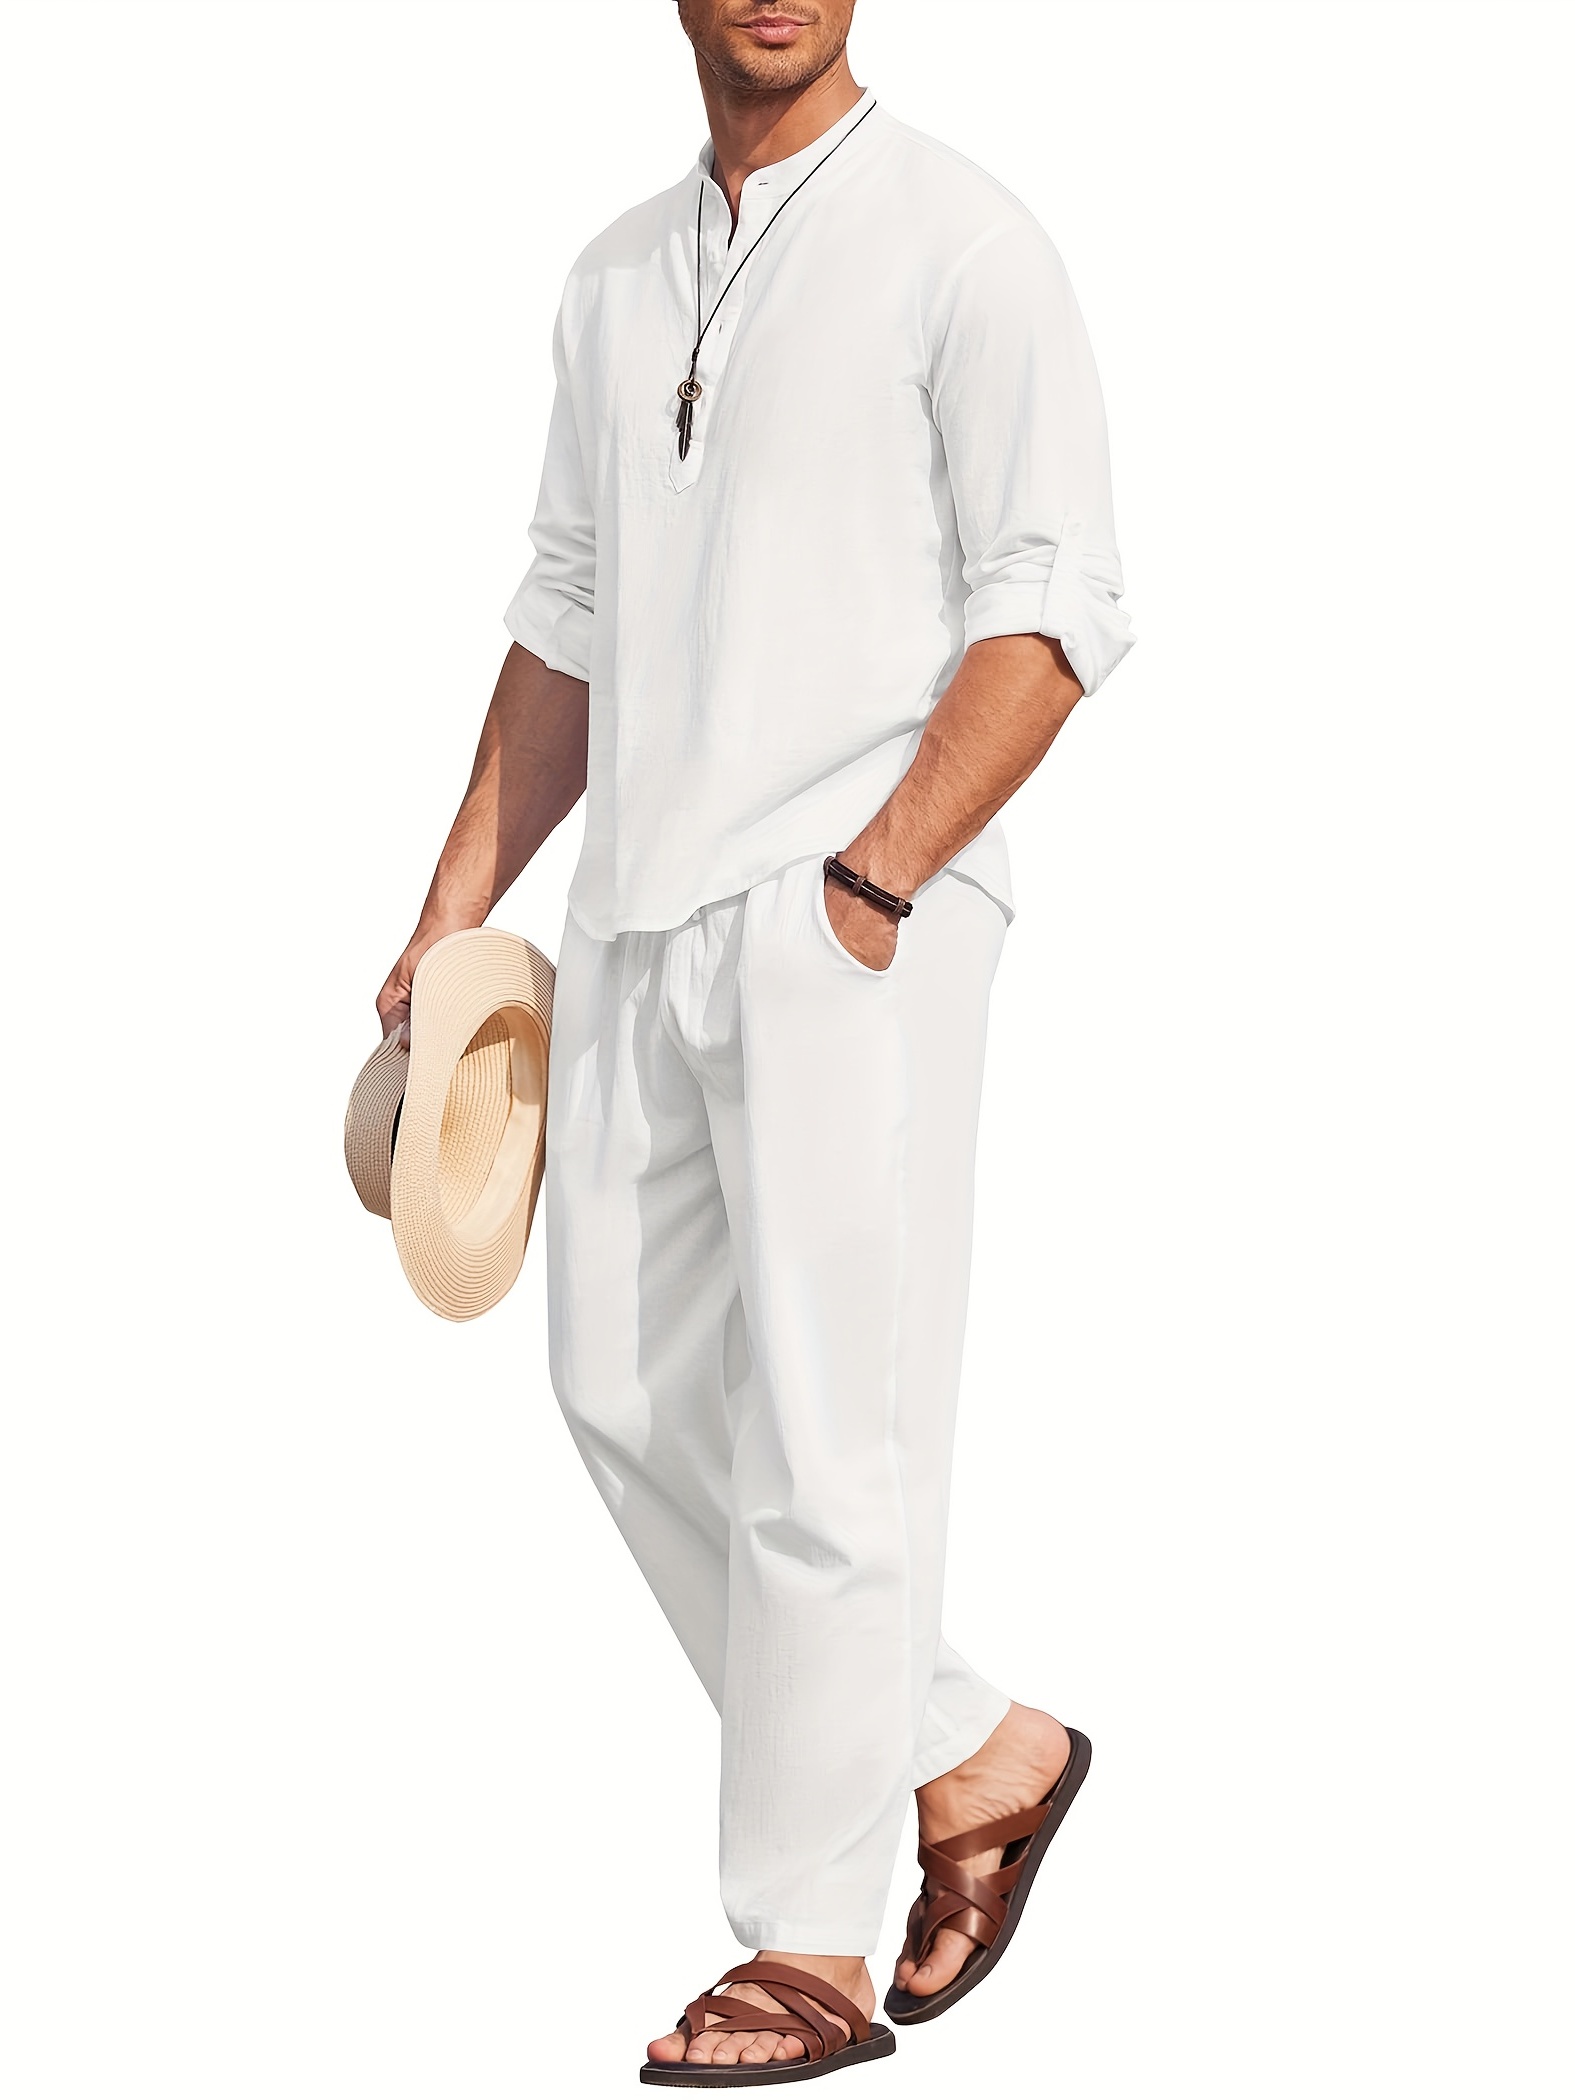 Men's White Linen Shirt Long Sleeve